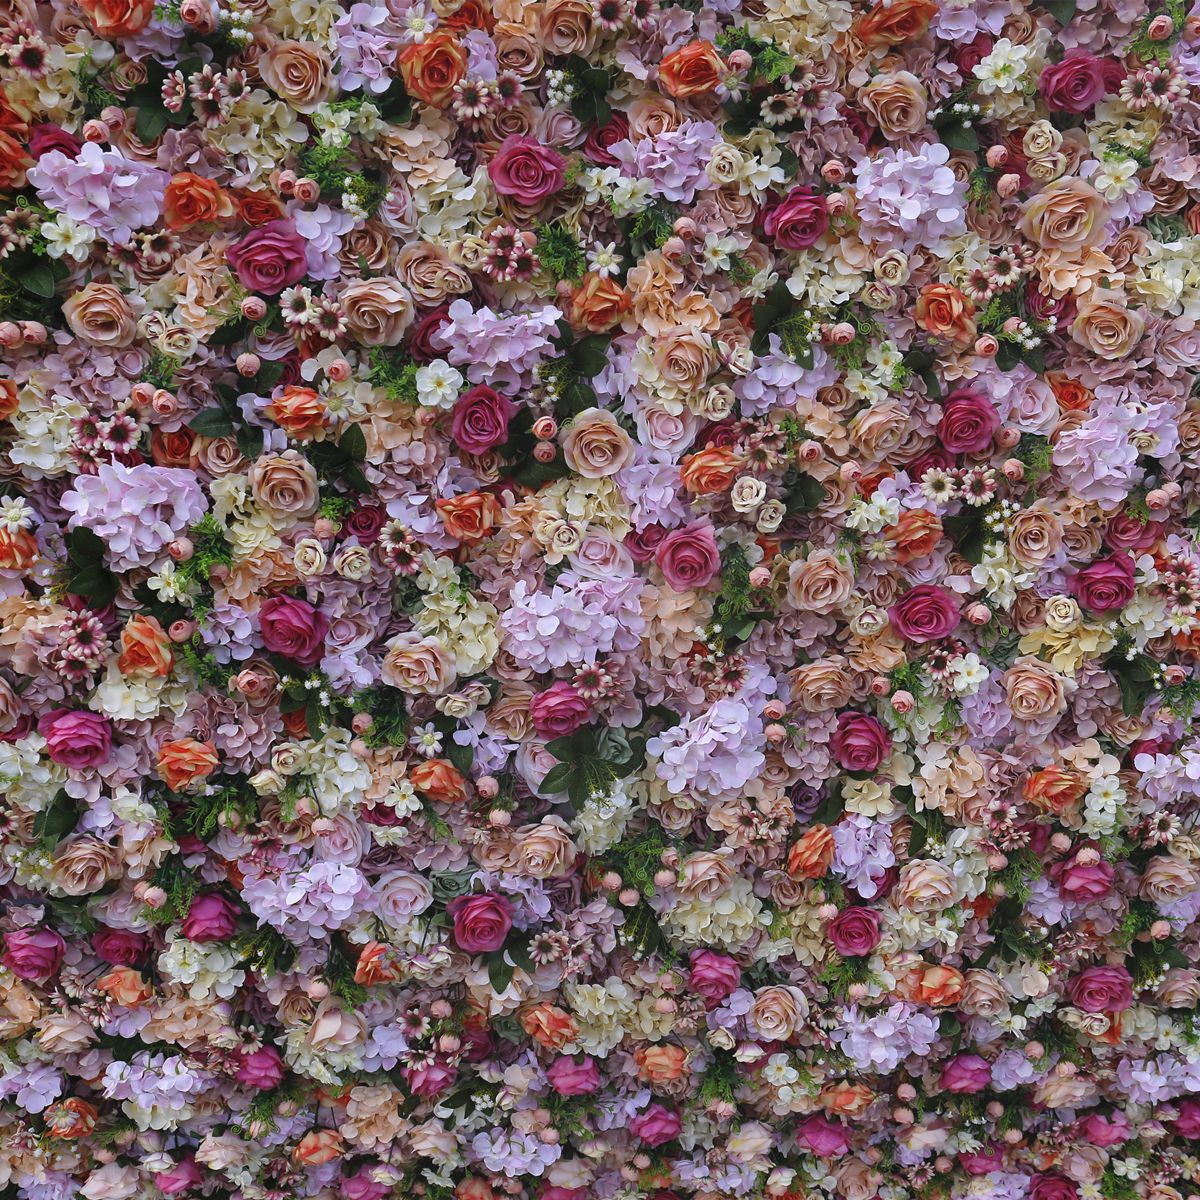  Προσομοιωμένη διακόσμηση γάμου τοίχου με λουλούδια, διακόσμηση εξωτερικής δραστηριότητας 